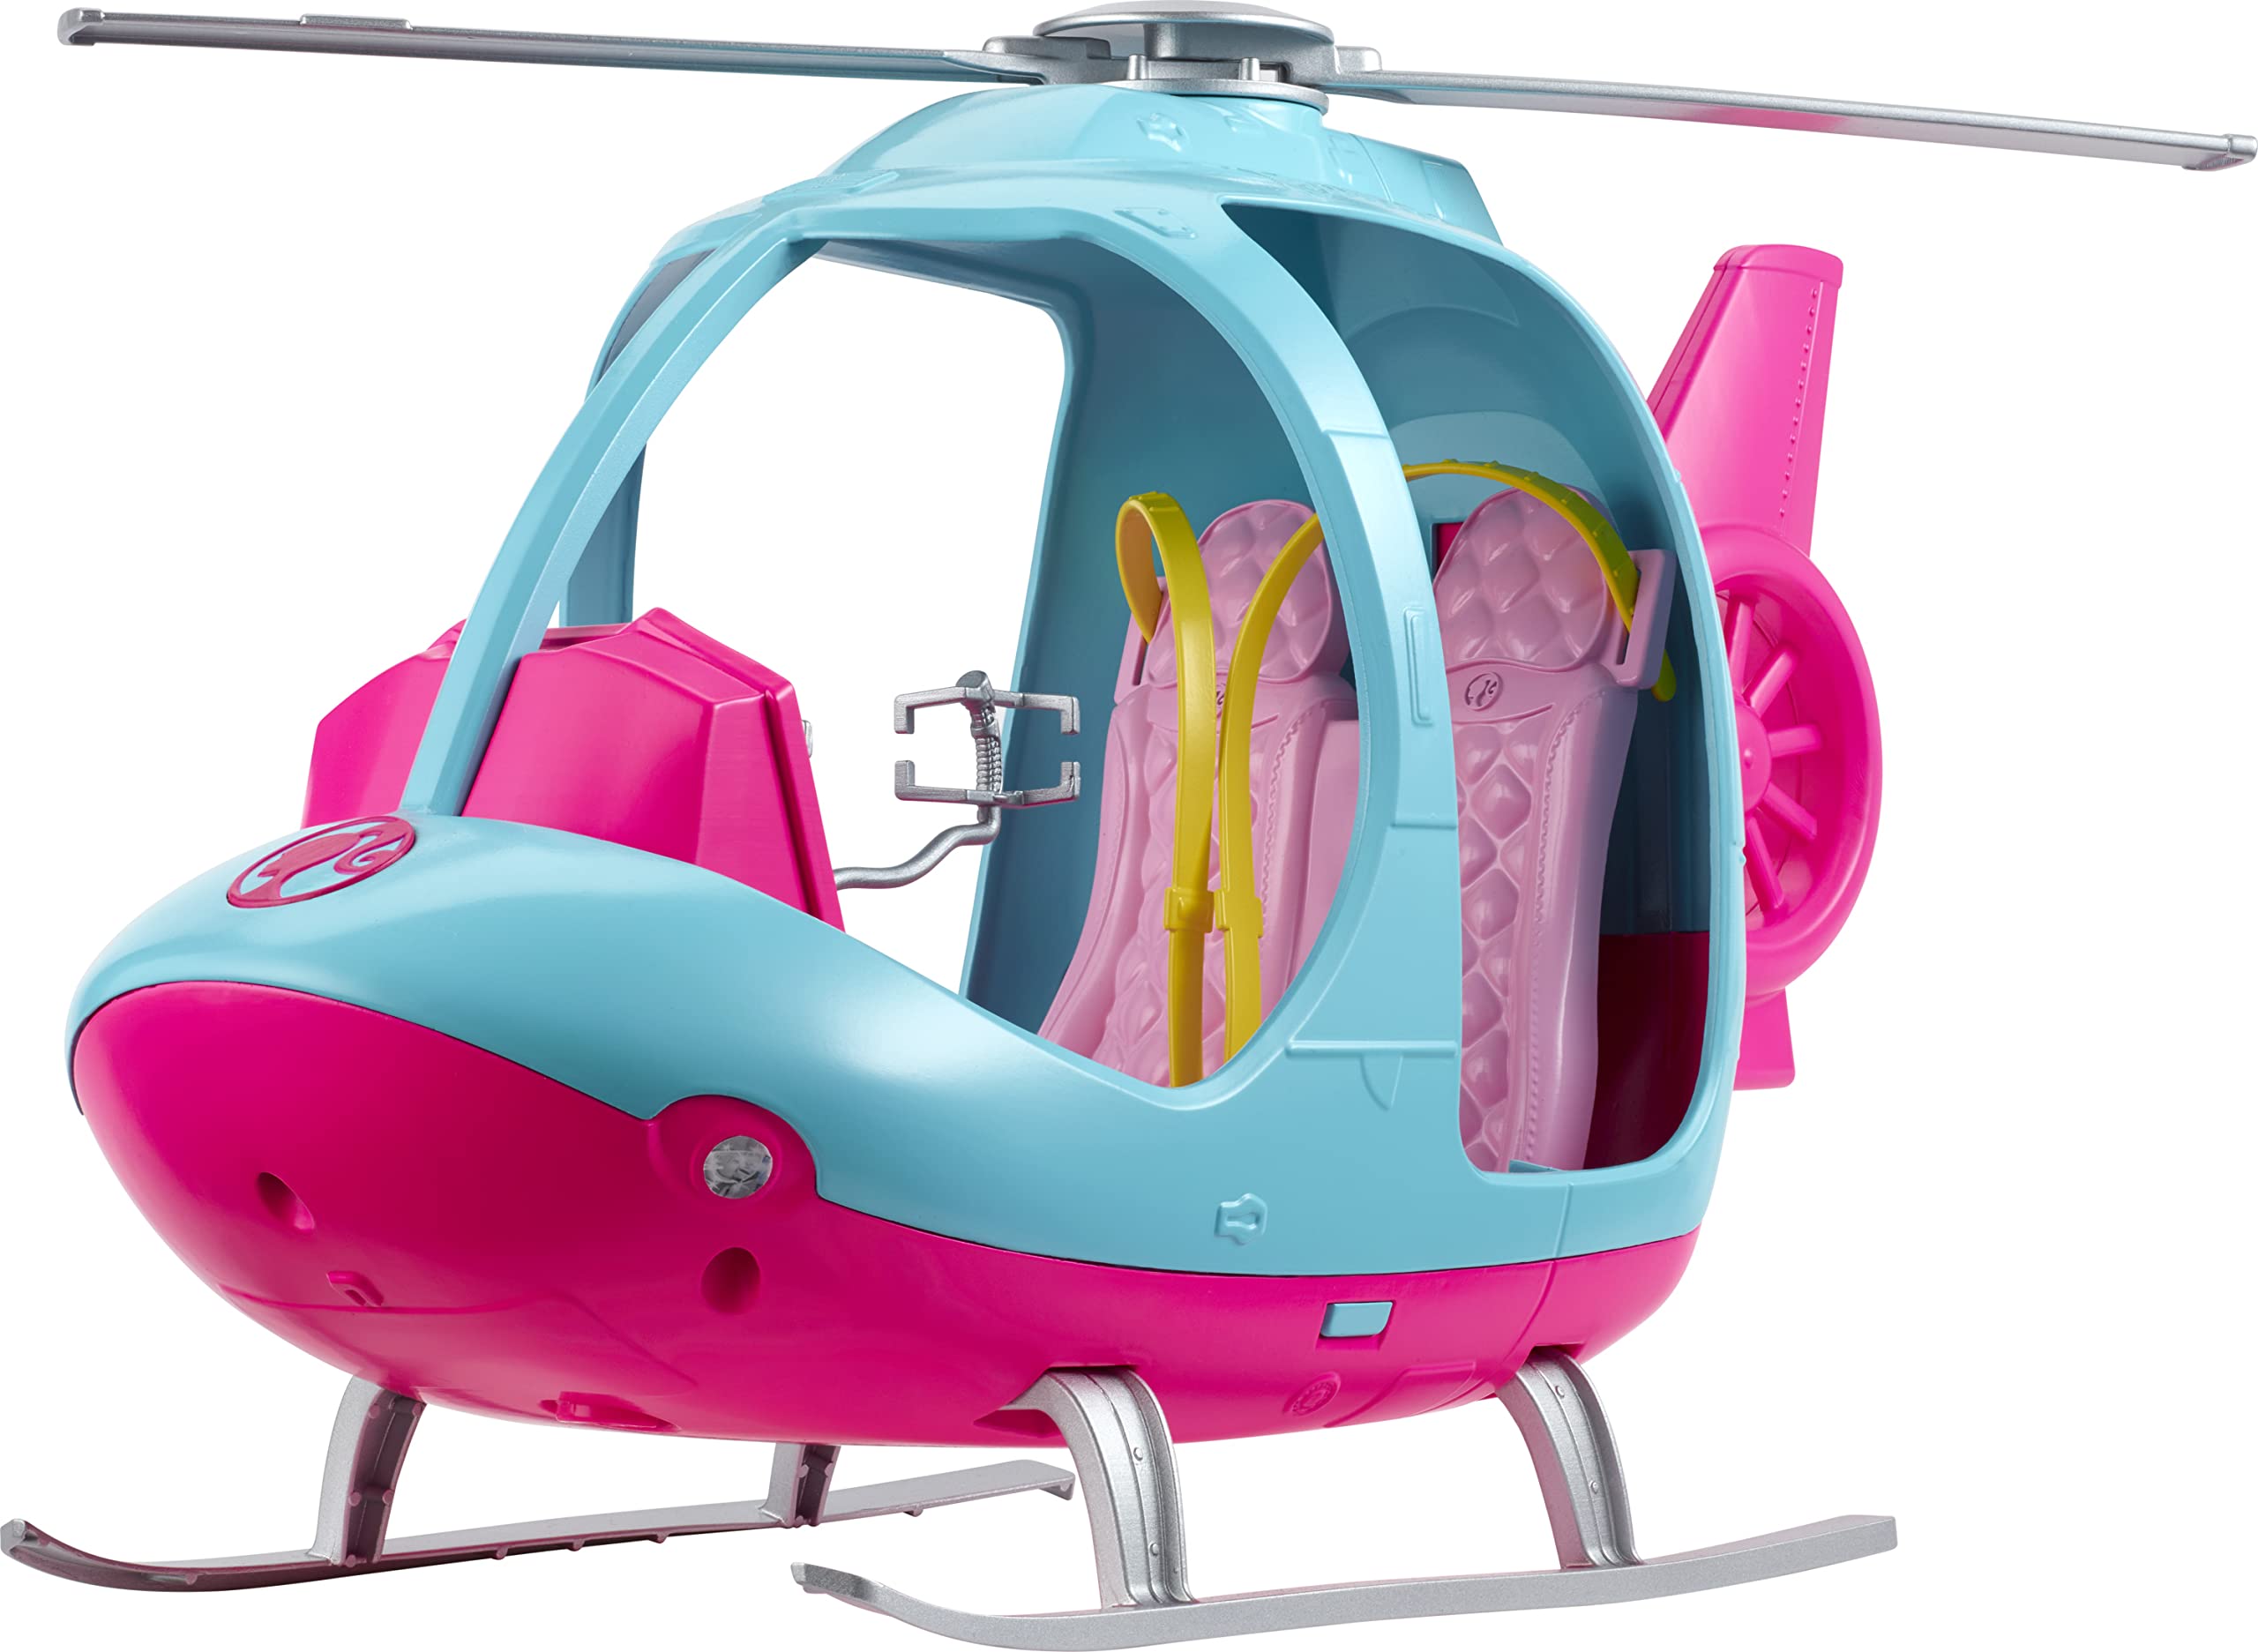 L' elicottero di barbie